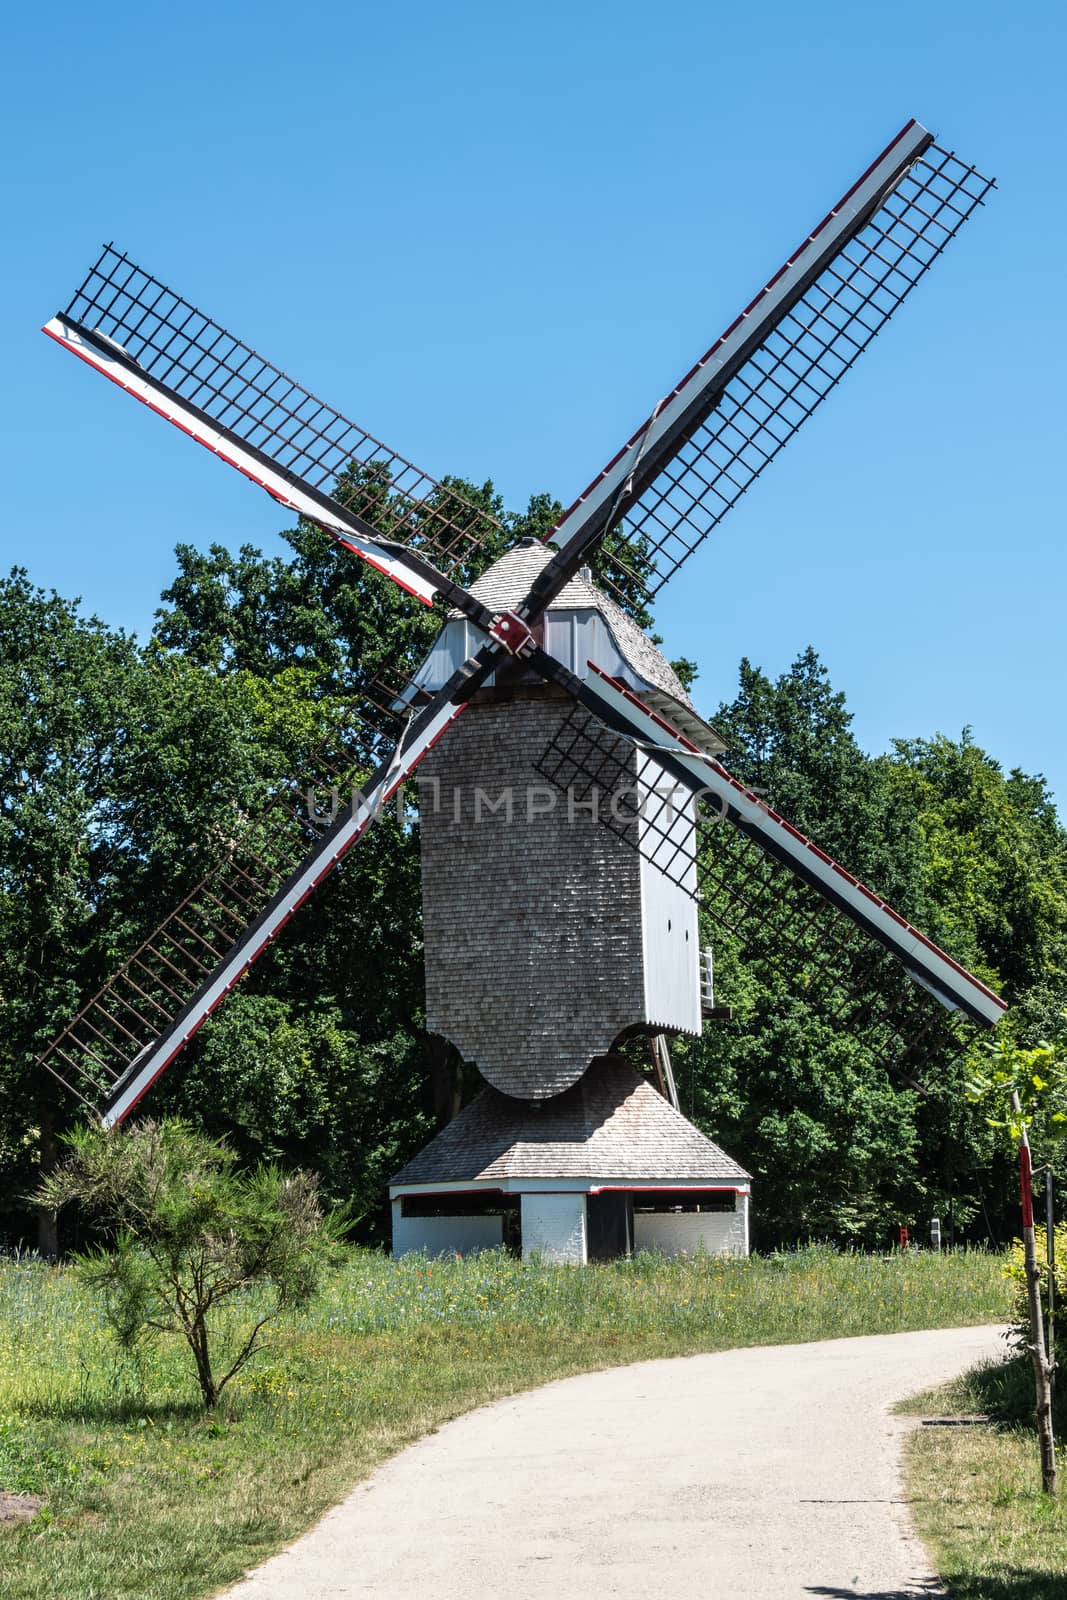 The Windmill of Schulen, Bokrijk Belgium. by Claudine